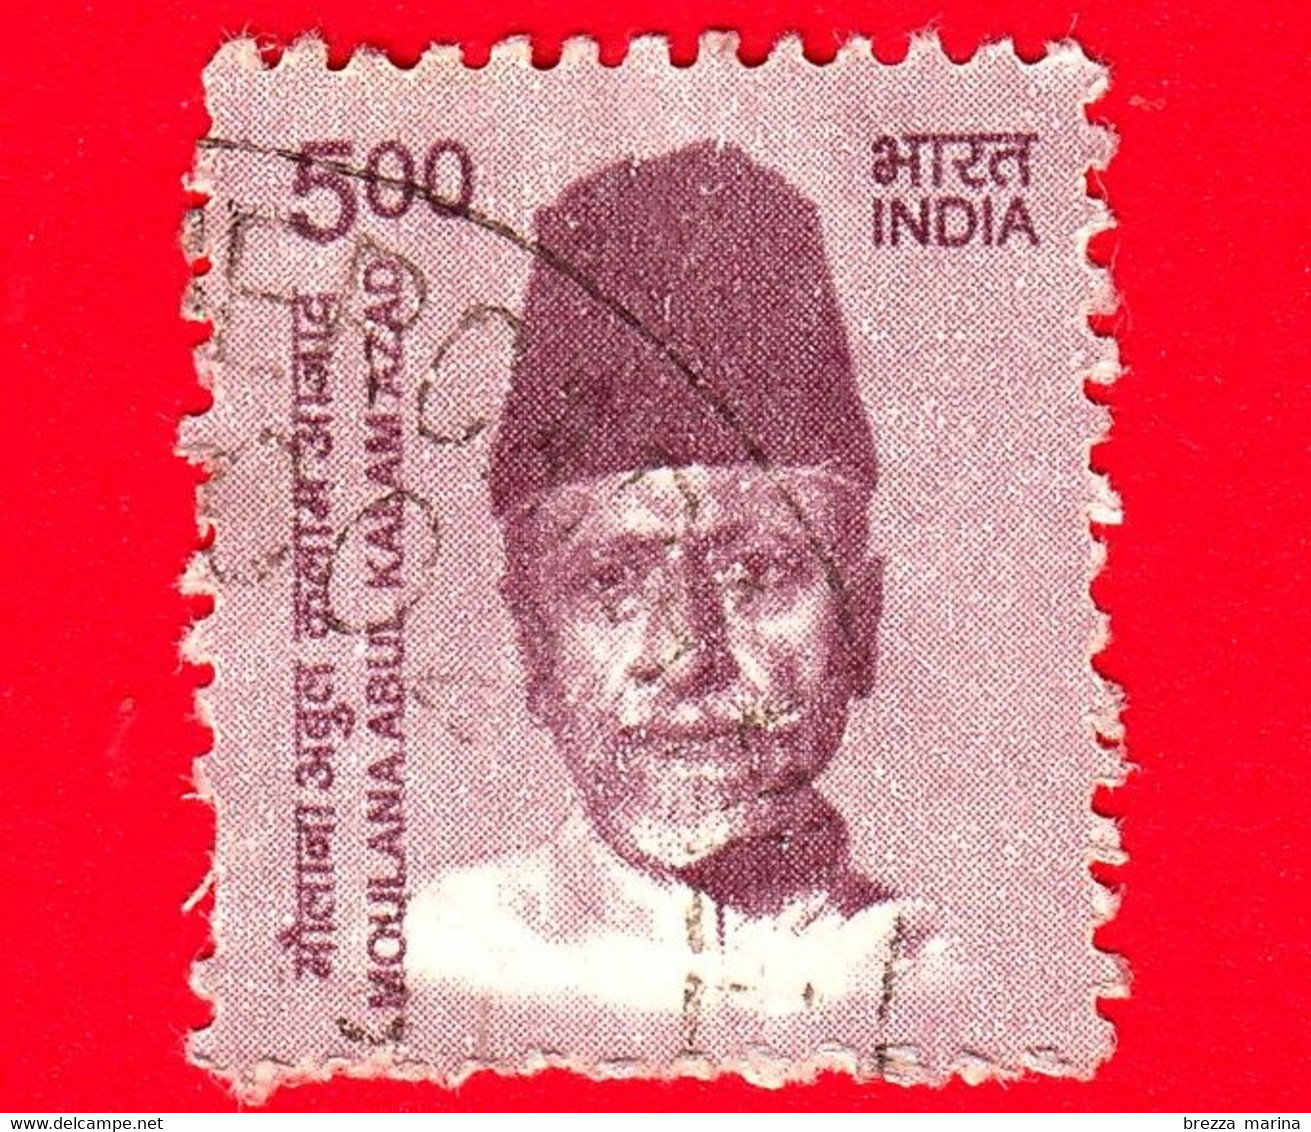 INDIA  - Usato - 2015 - Creatori Dell'India - Moulana Abul Kalam Azad (1888-1958), Politico E Scrittore - 5 - Oblitérés